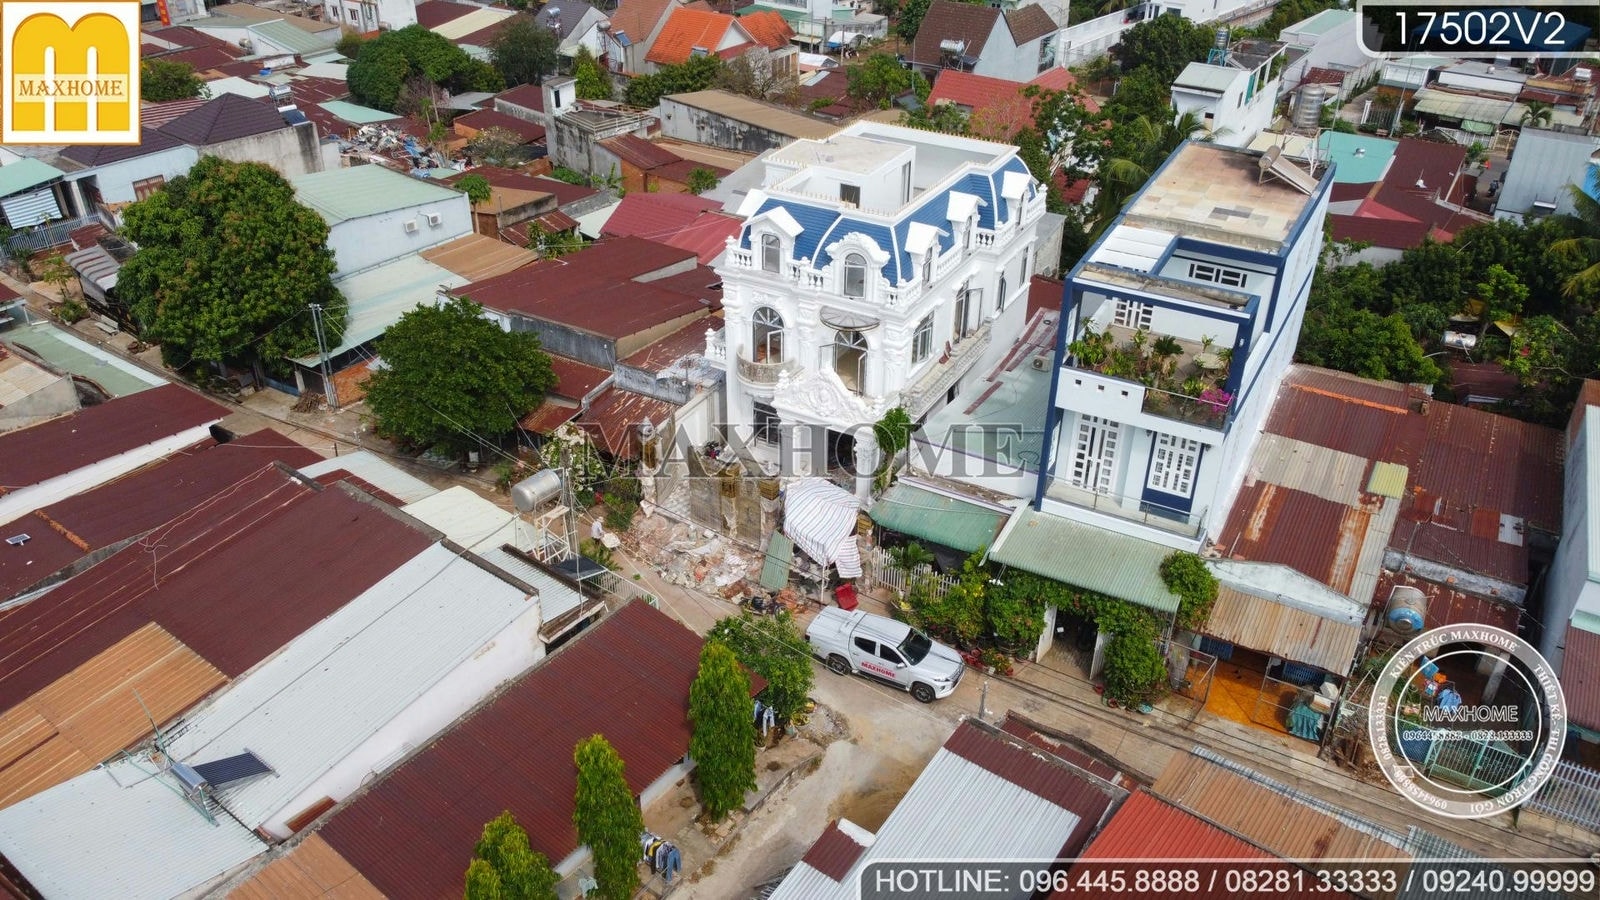 Ghé thăm tiến độ công trình mái Mansard đồ sộ ở Bình Phước | MH00892